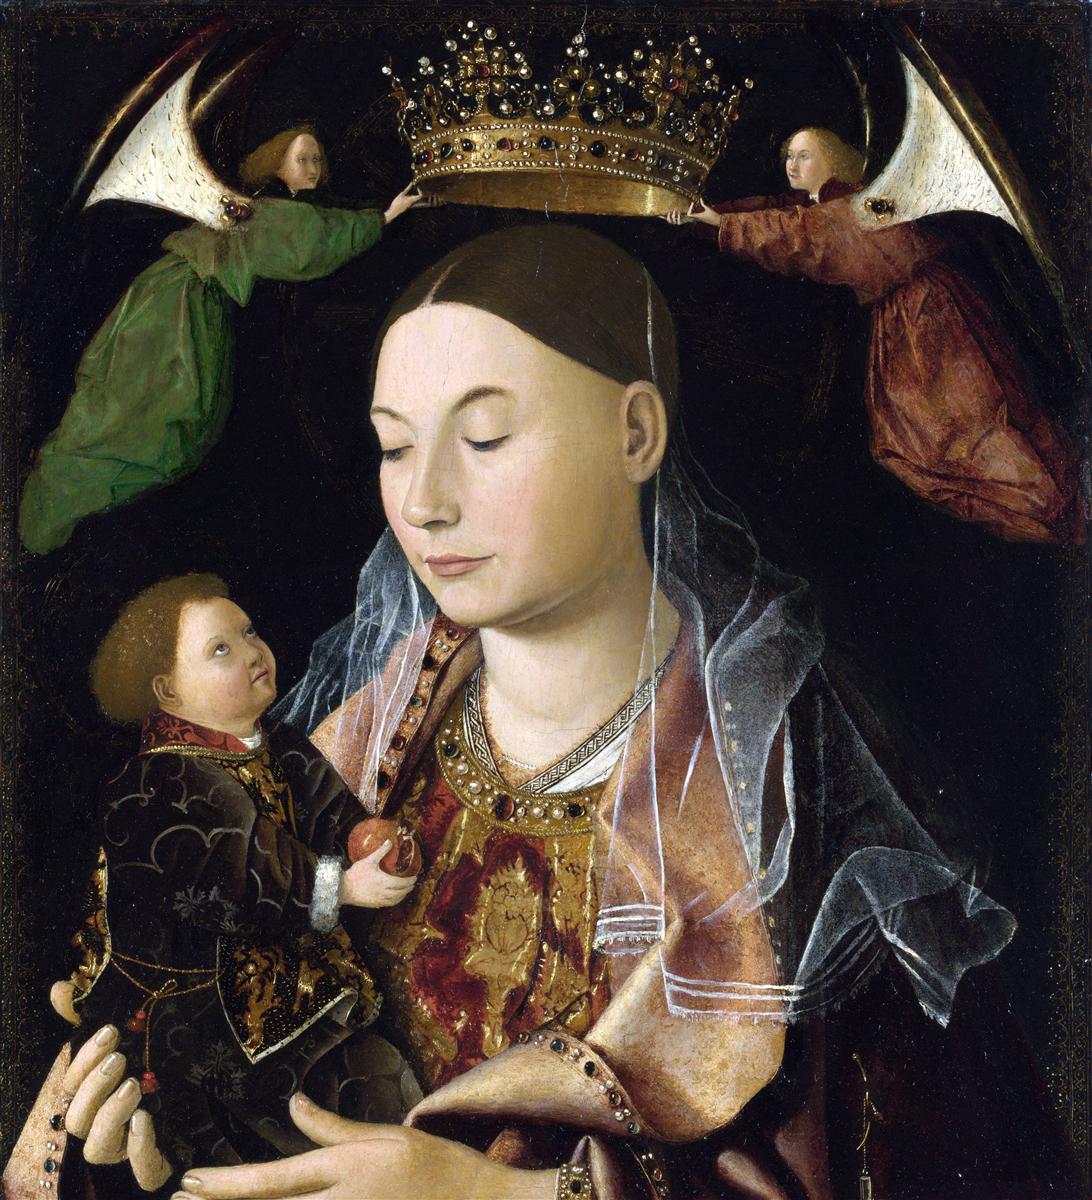 Antonello da Messina, Madonna und Kind, ca. 1460